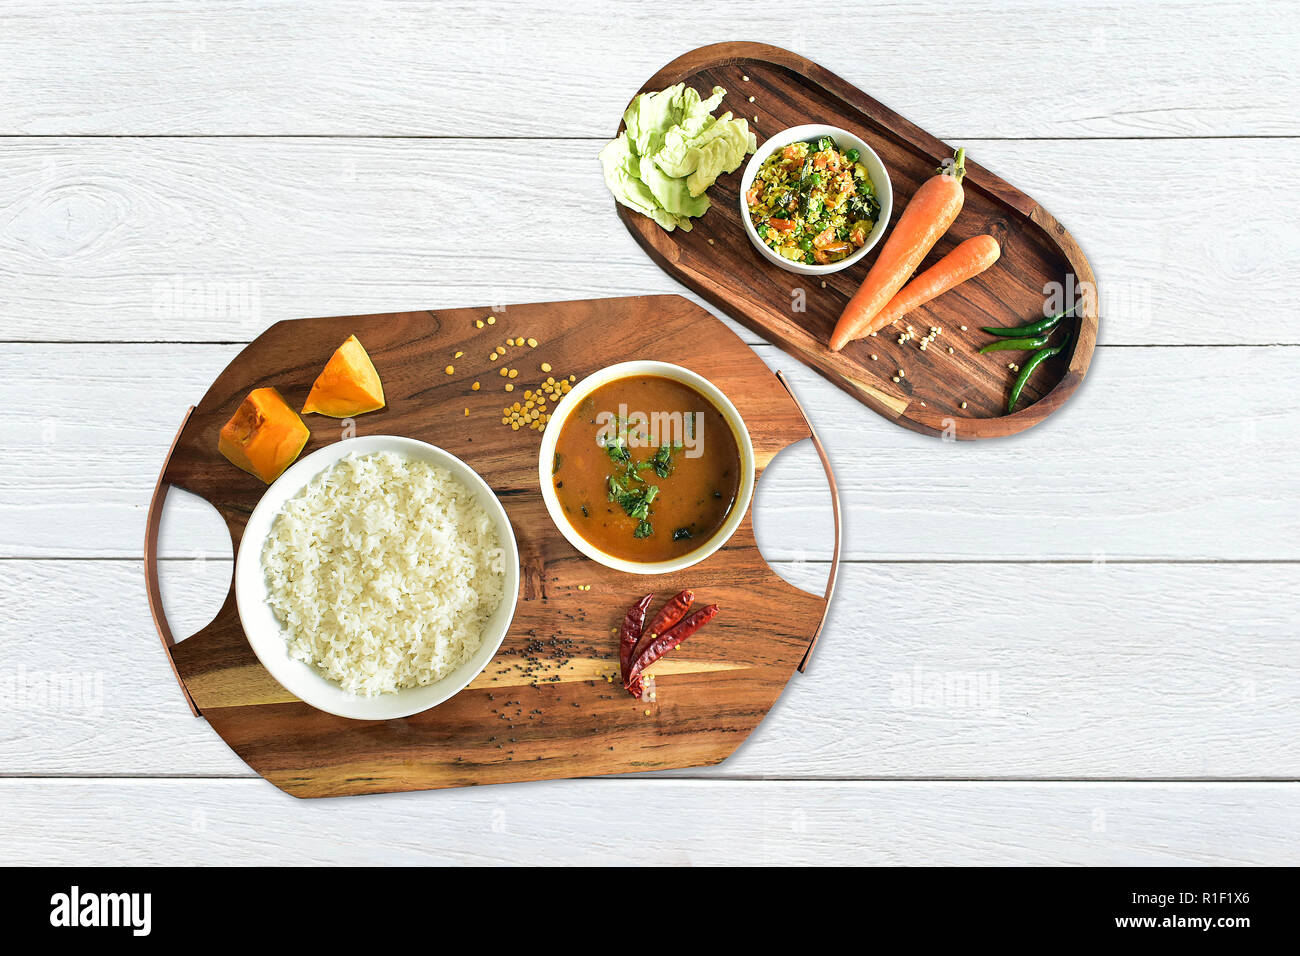 Lecker, Mouth-Watering, Yummy, Würzig, südindischer Kürbis-Curry/Sauce mit Reis und Gemüse Stockfoto